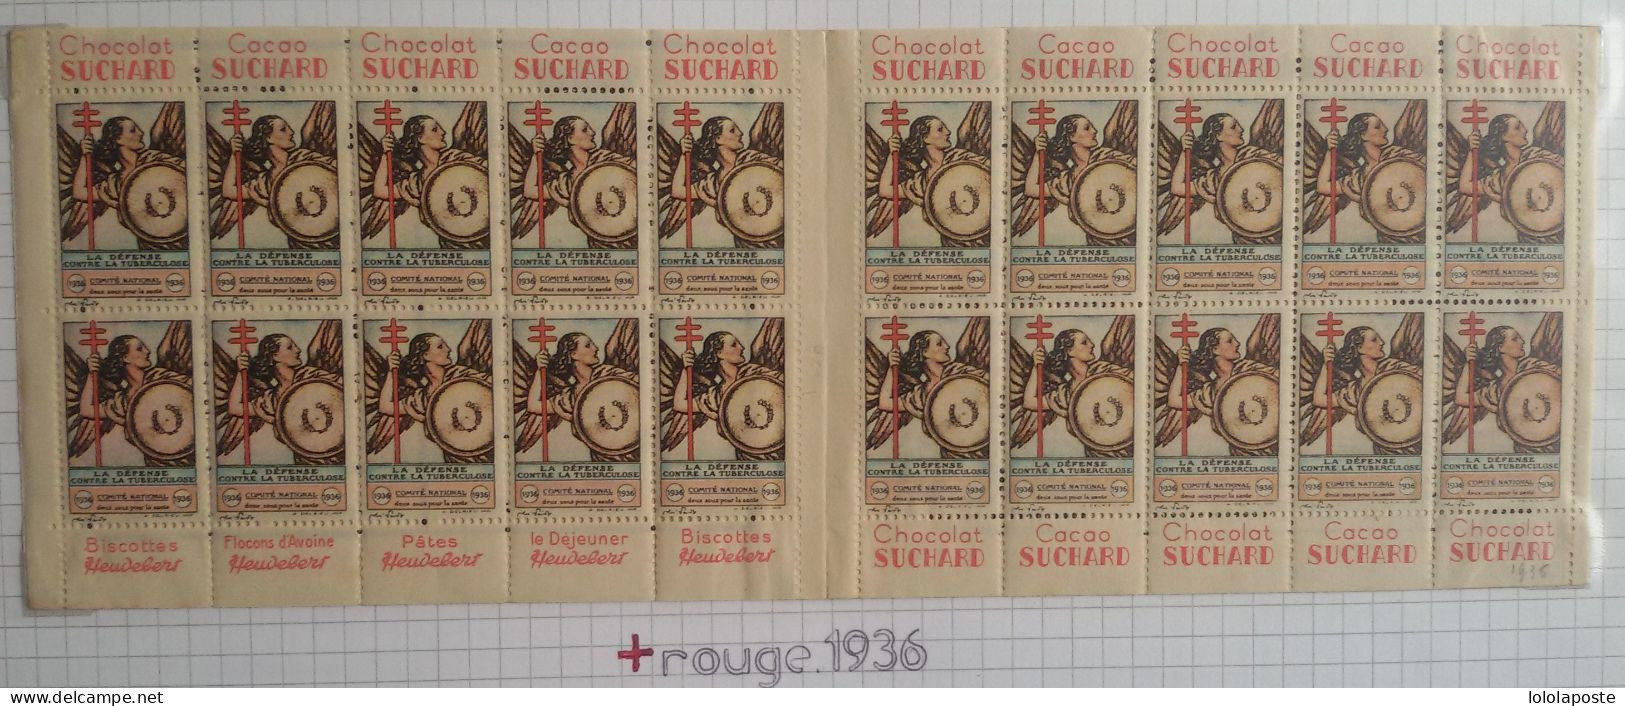 8 carnets anti tuberculeux entre 1930 et 1939 ainsi que quelques carte d'adhérent à la croix rouge - 8 photos